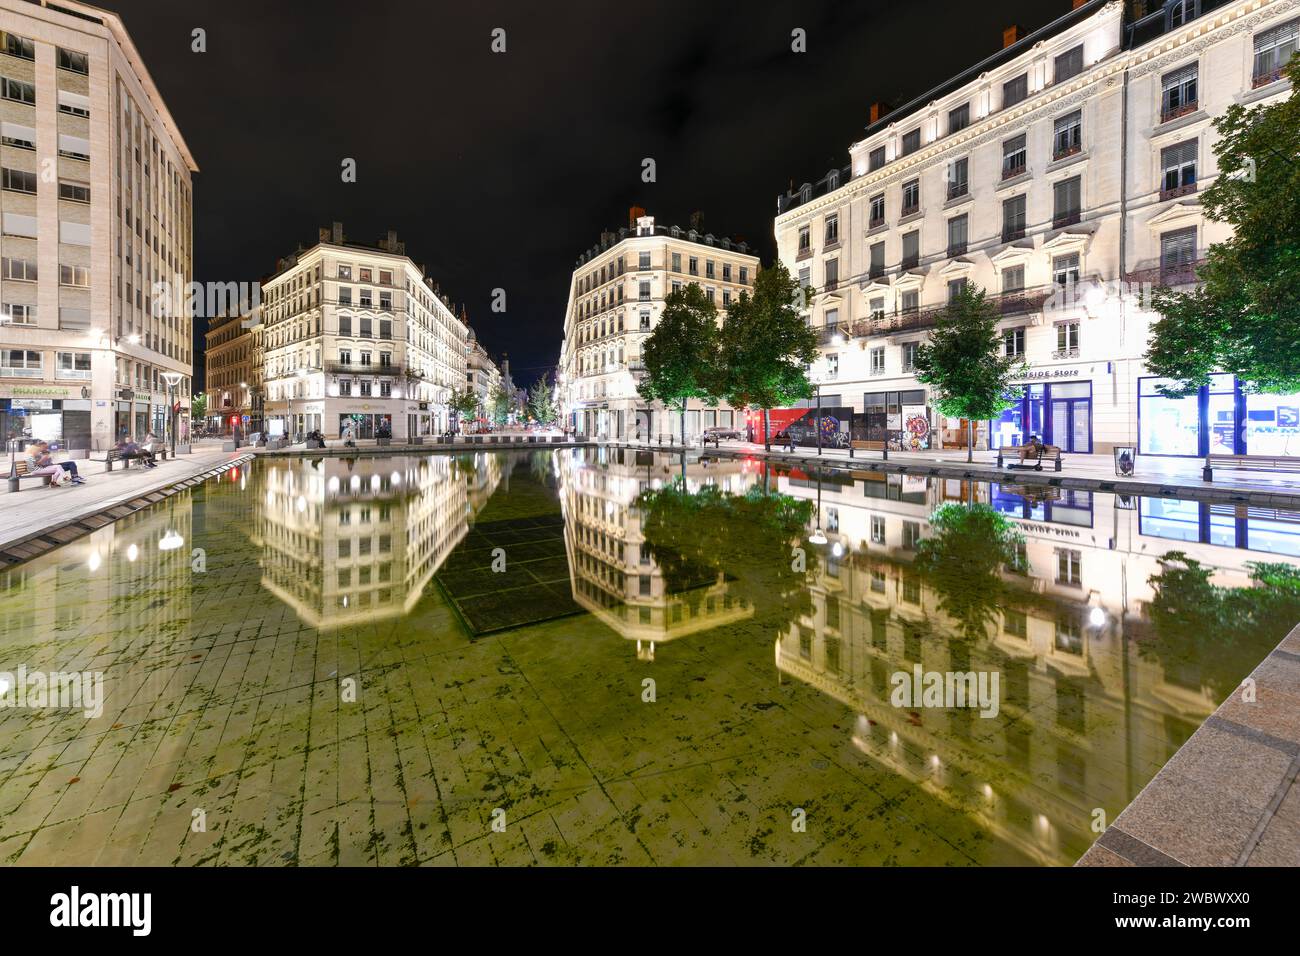 Lione, Francia - 19 agosto 2022: Vista notturna di Place de la republique nel centro storico di Lione, Francia. Foto Stock